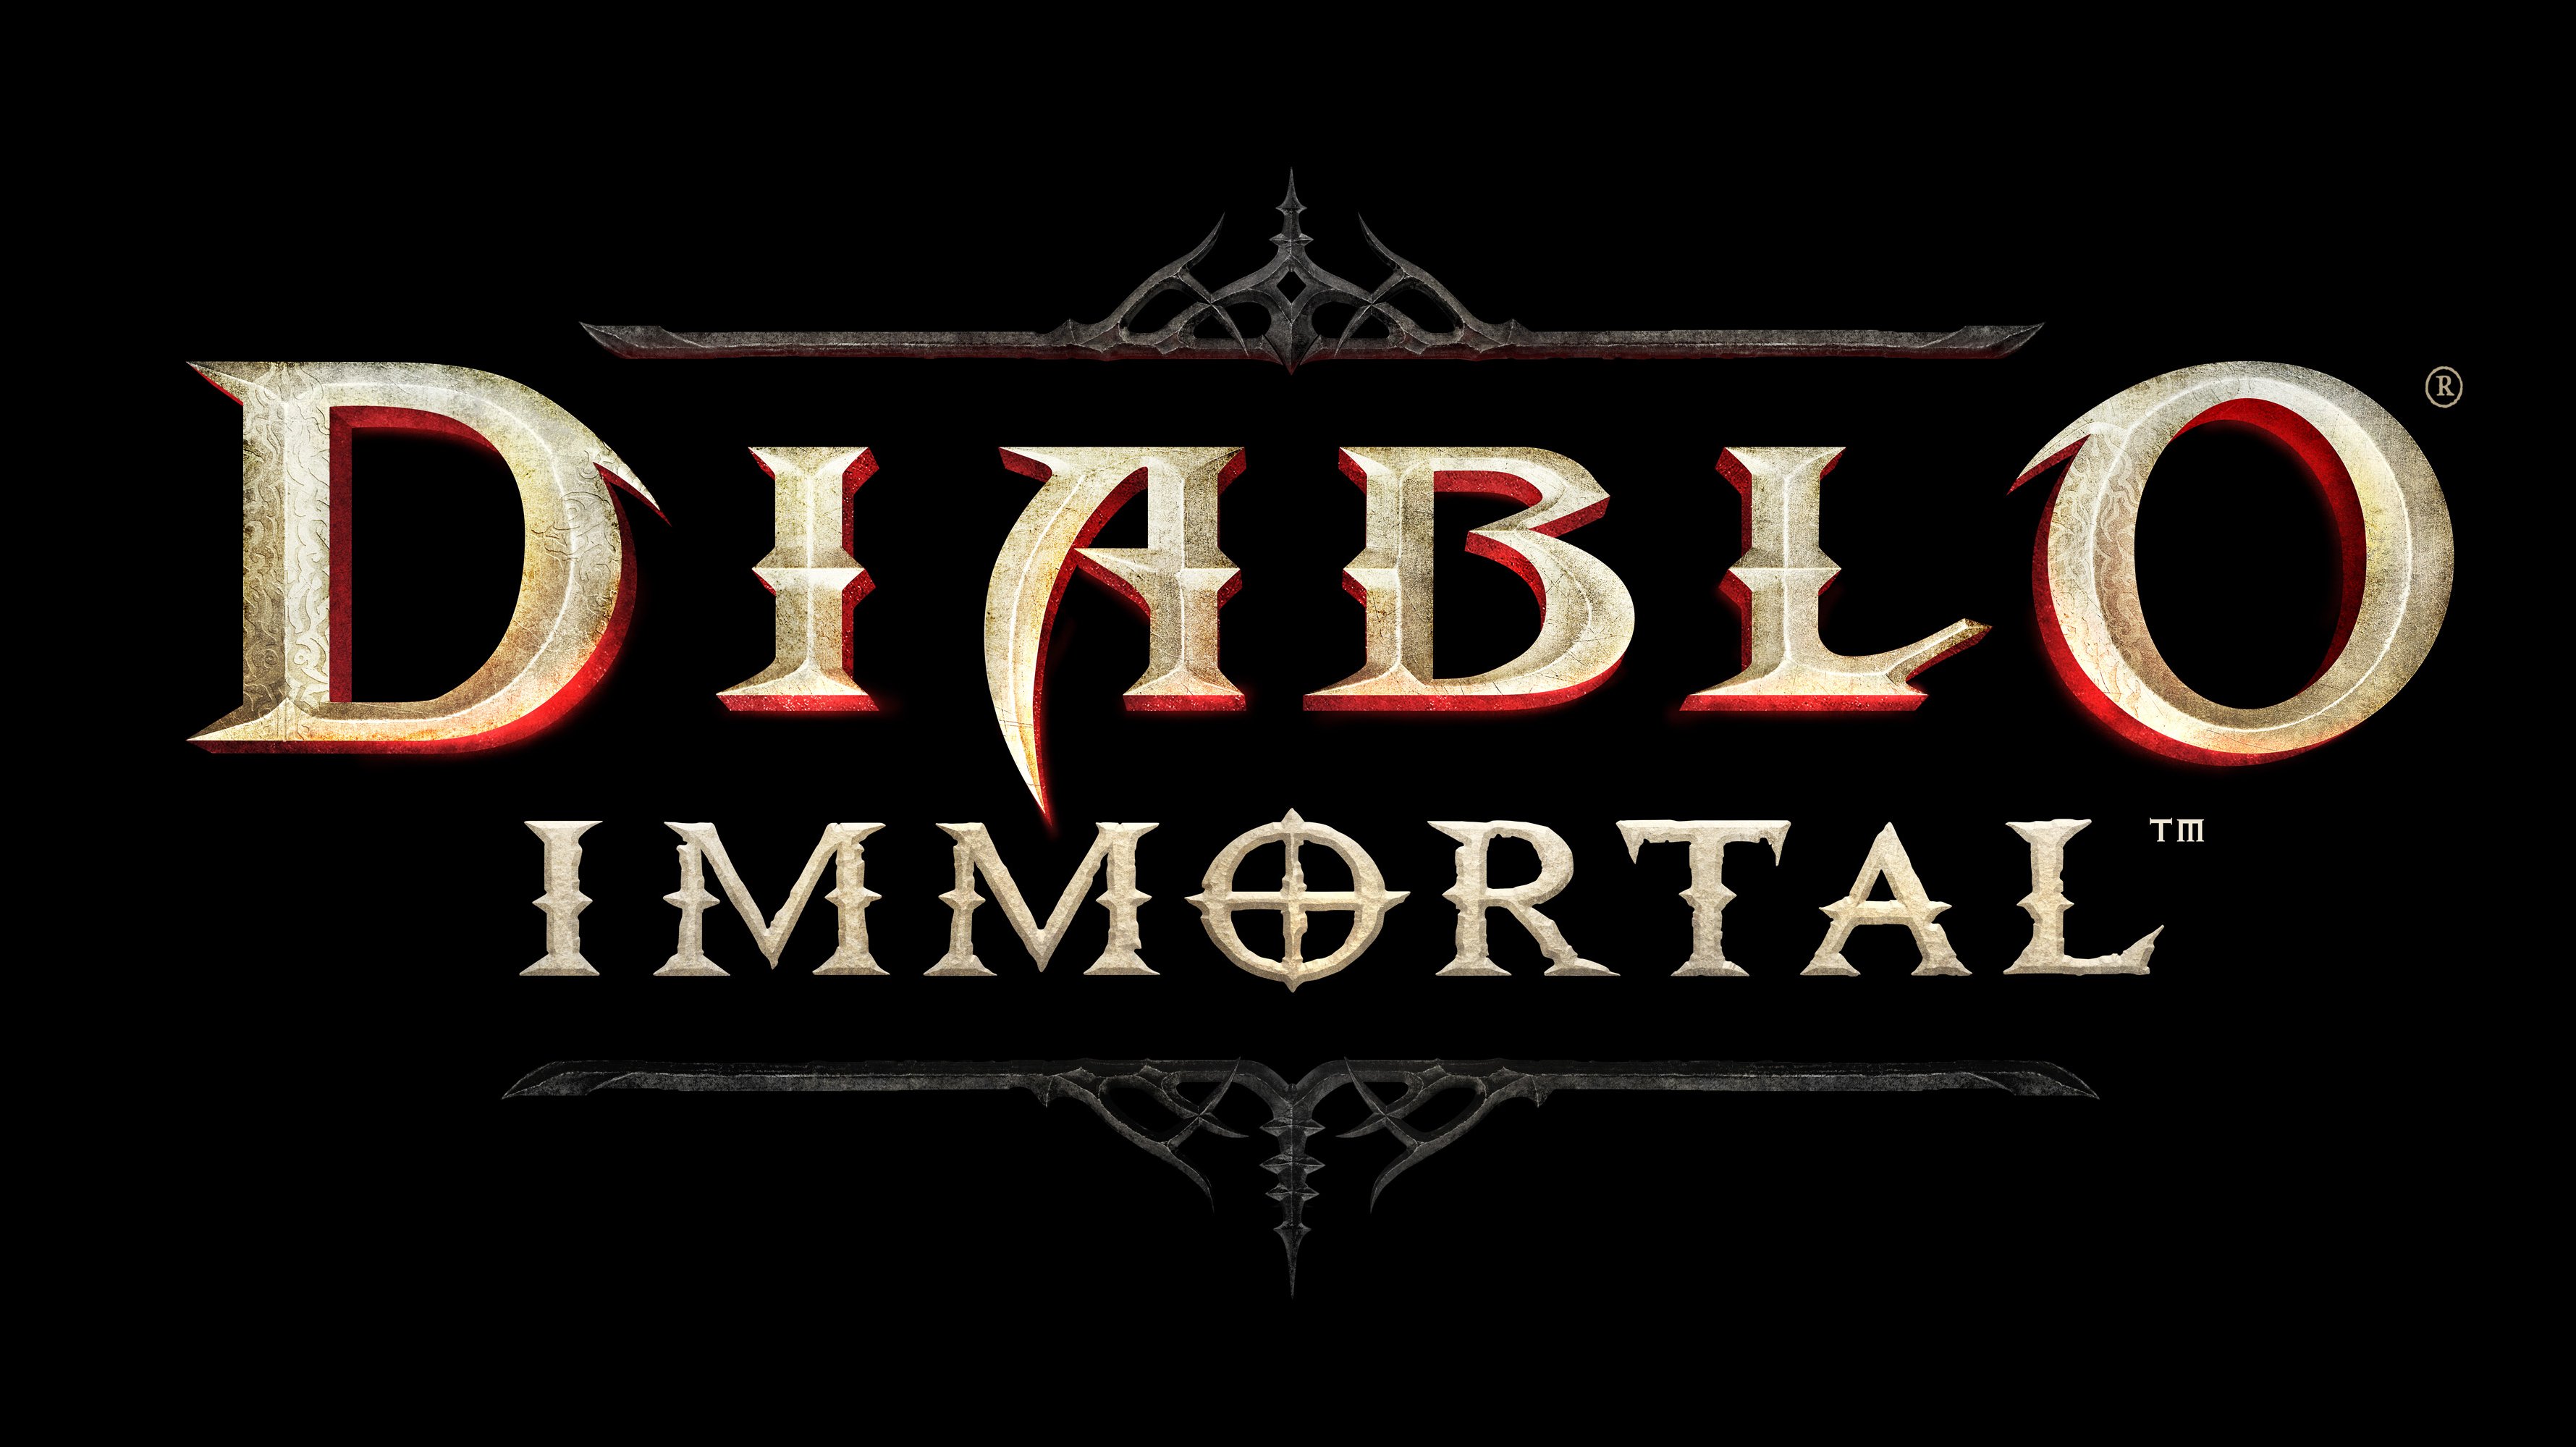 diablo immortal release date pc